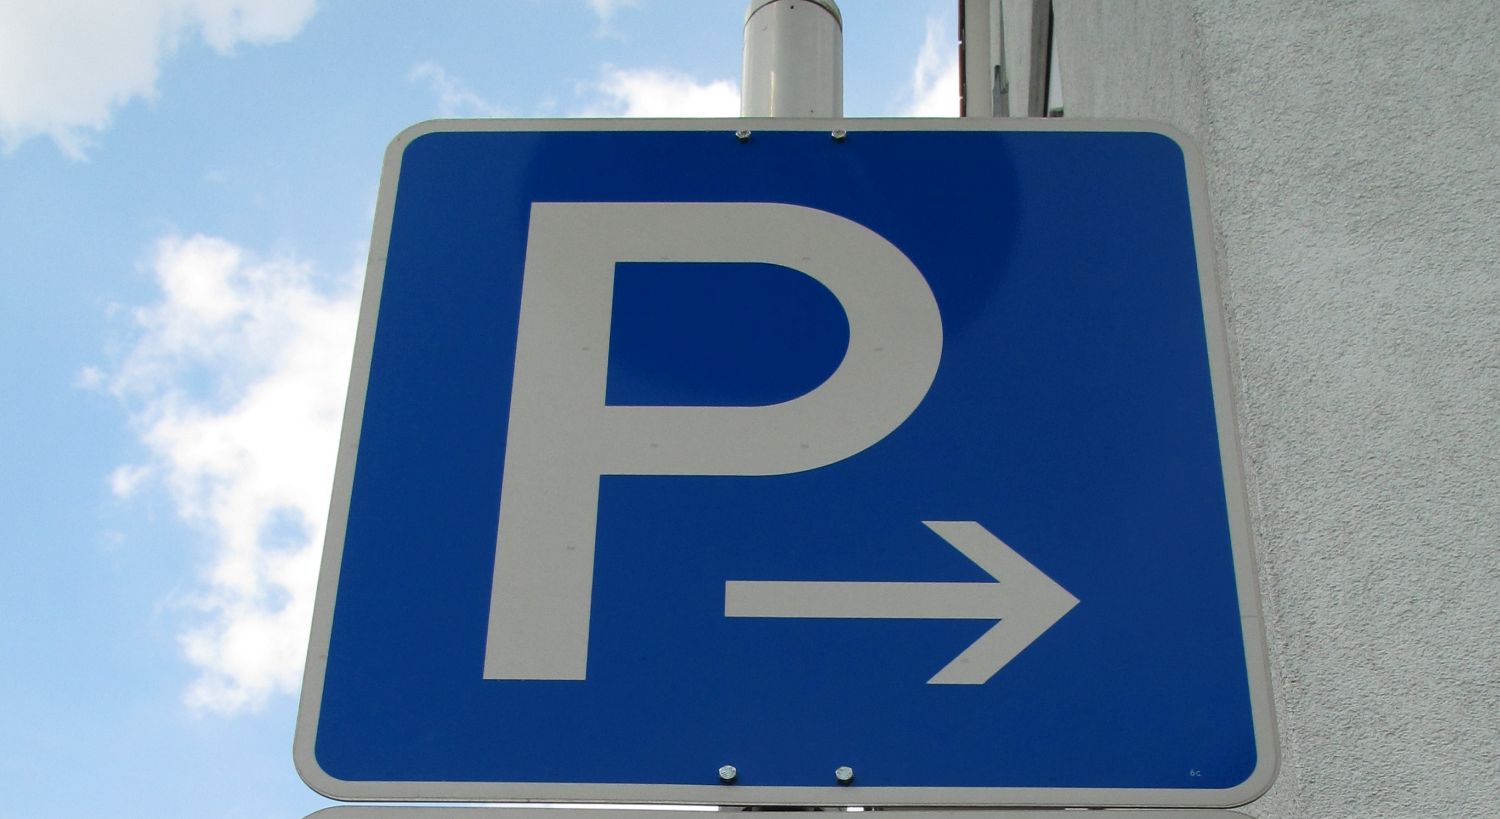 Blaues Verkehrsschild mit weißem P in Großbuchstaben und einem weißen Pfeil nach rechts.